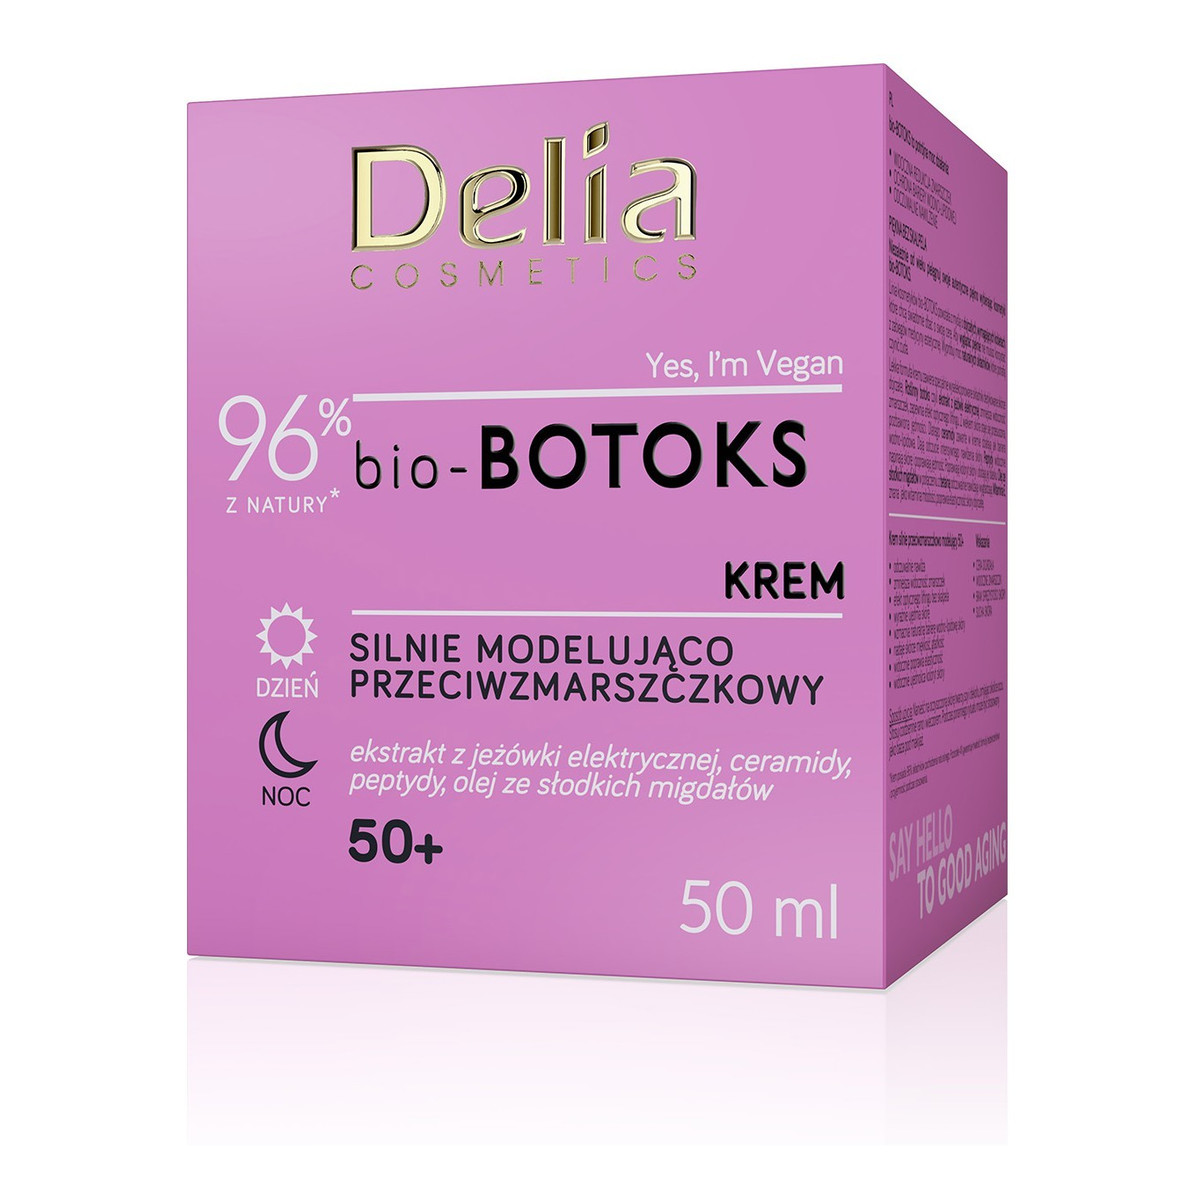 Delia Cosmetics bio-botoks Krem silnie modelująco przeciwzmarszczkowy 50+ na dzień i noc 50ml